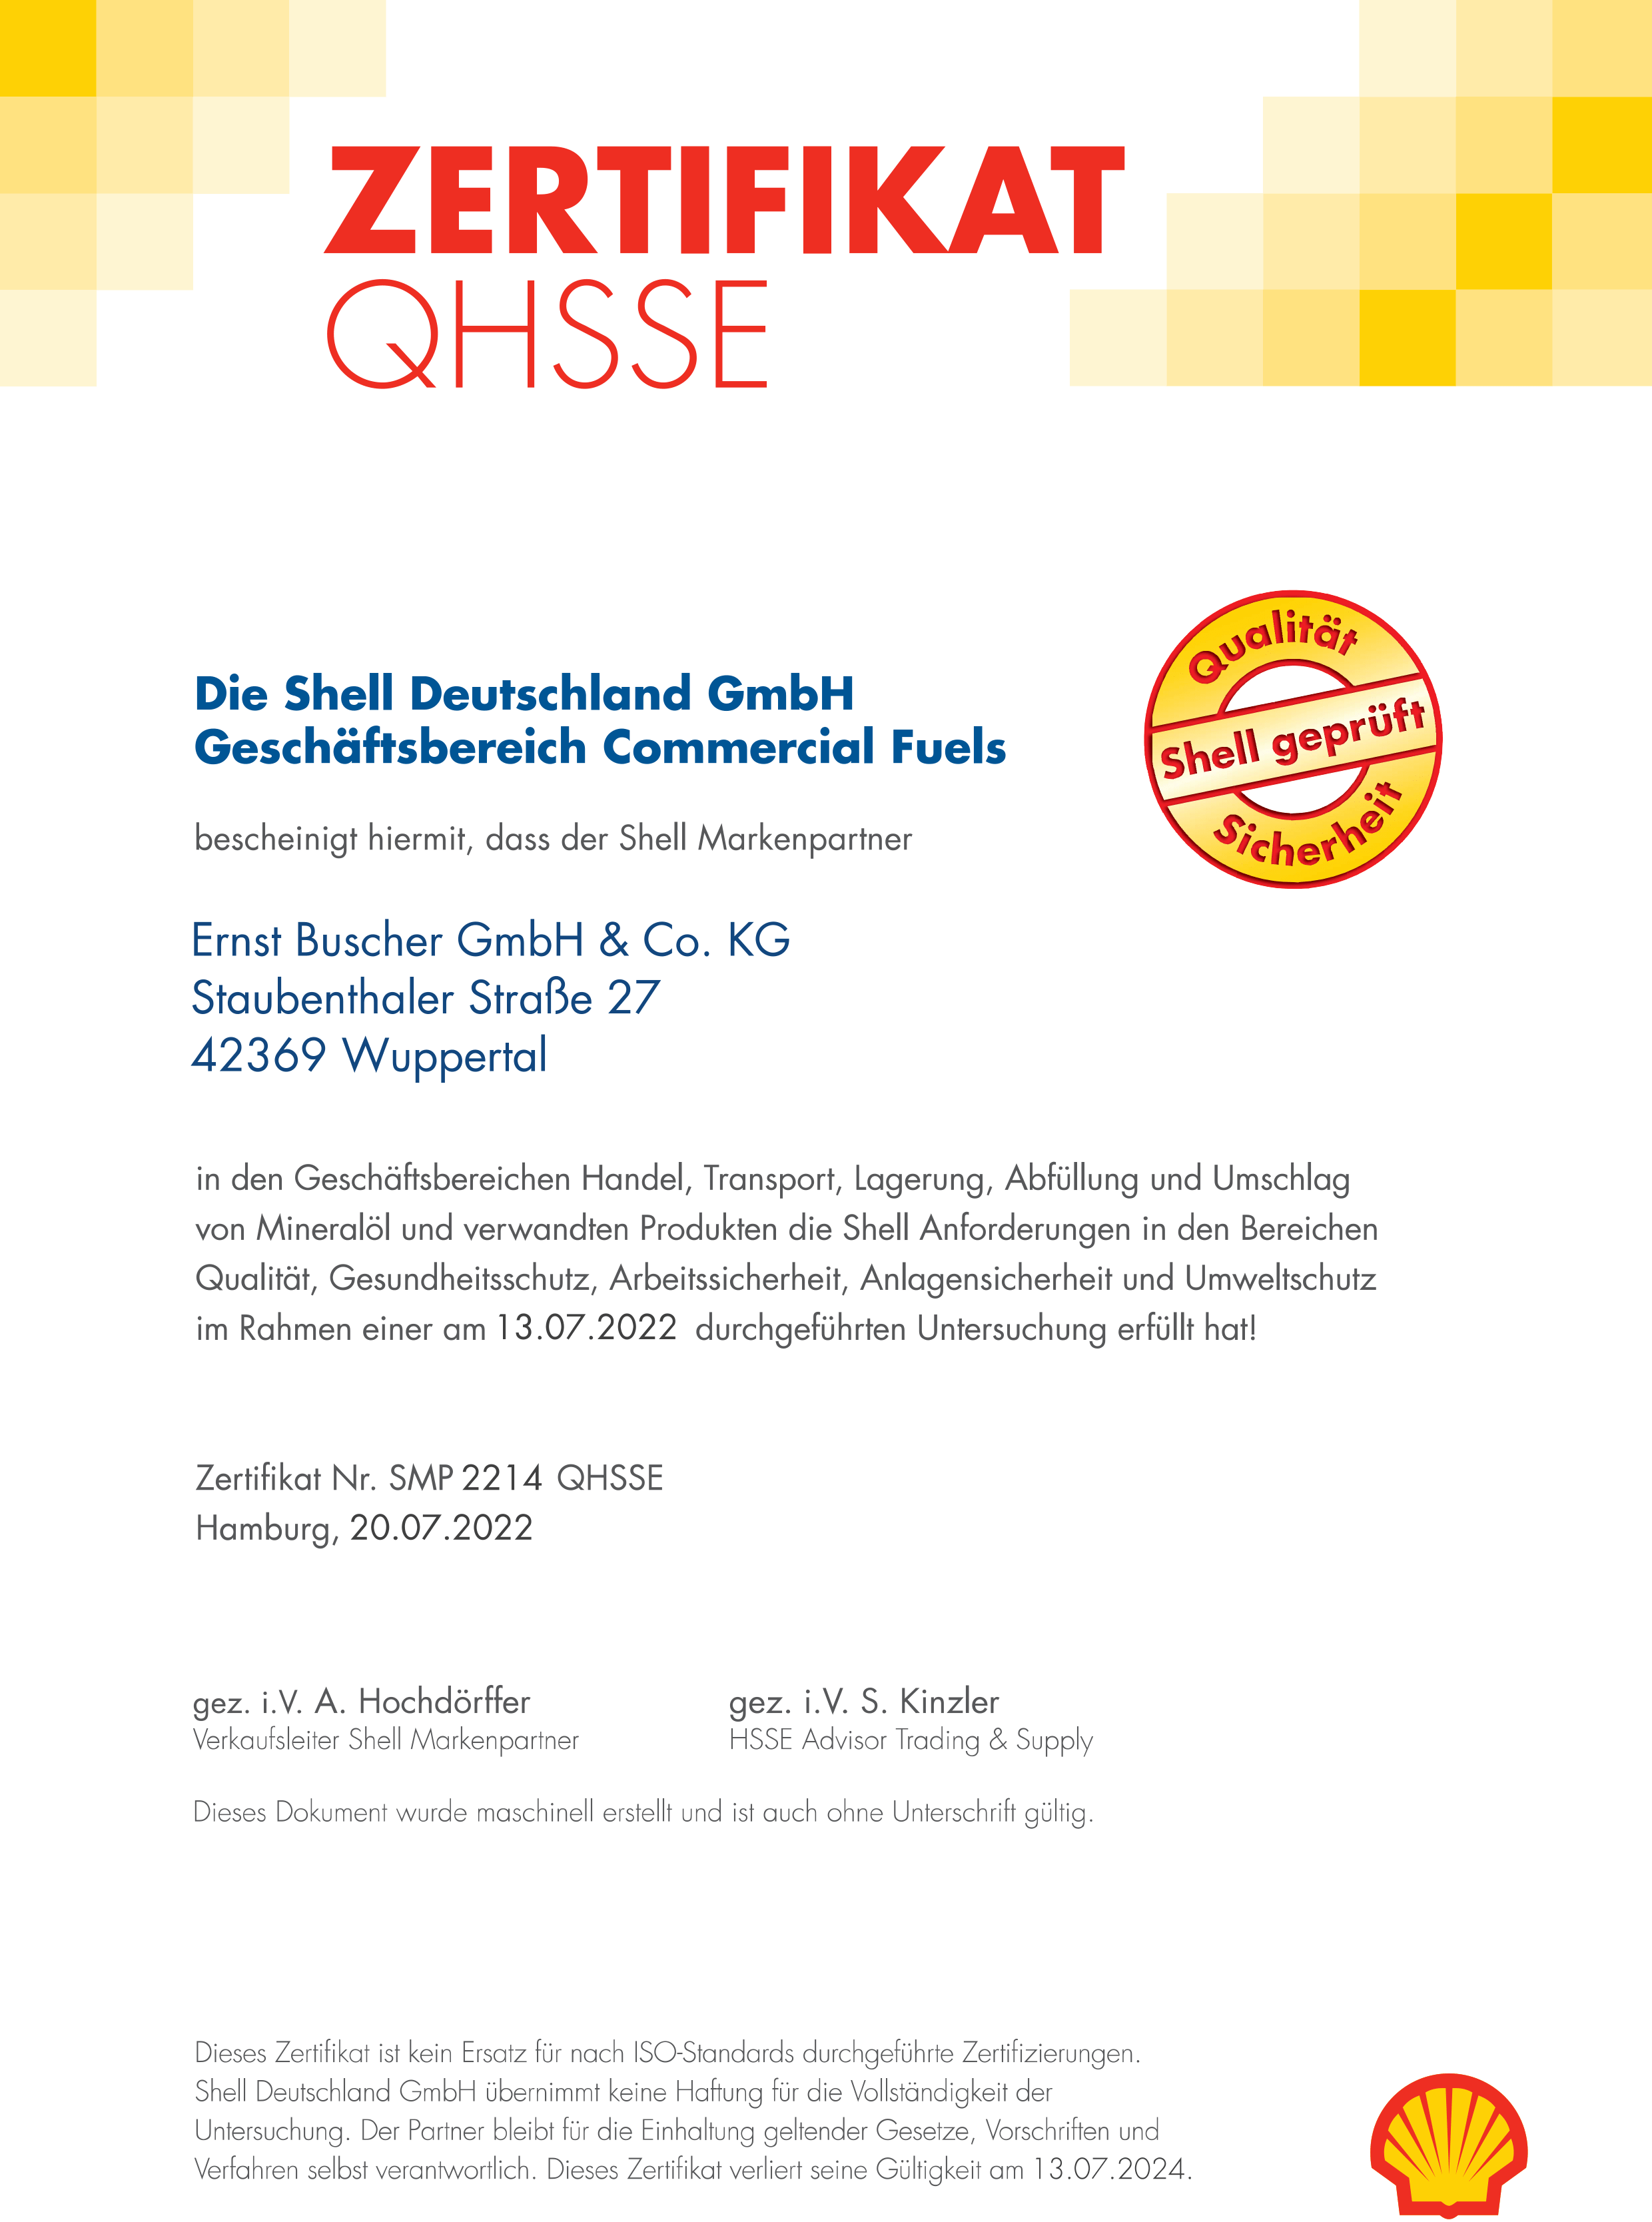 QHSSE Zertifikat Ernst Buscher GmbH Co. KG bis 13.07